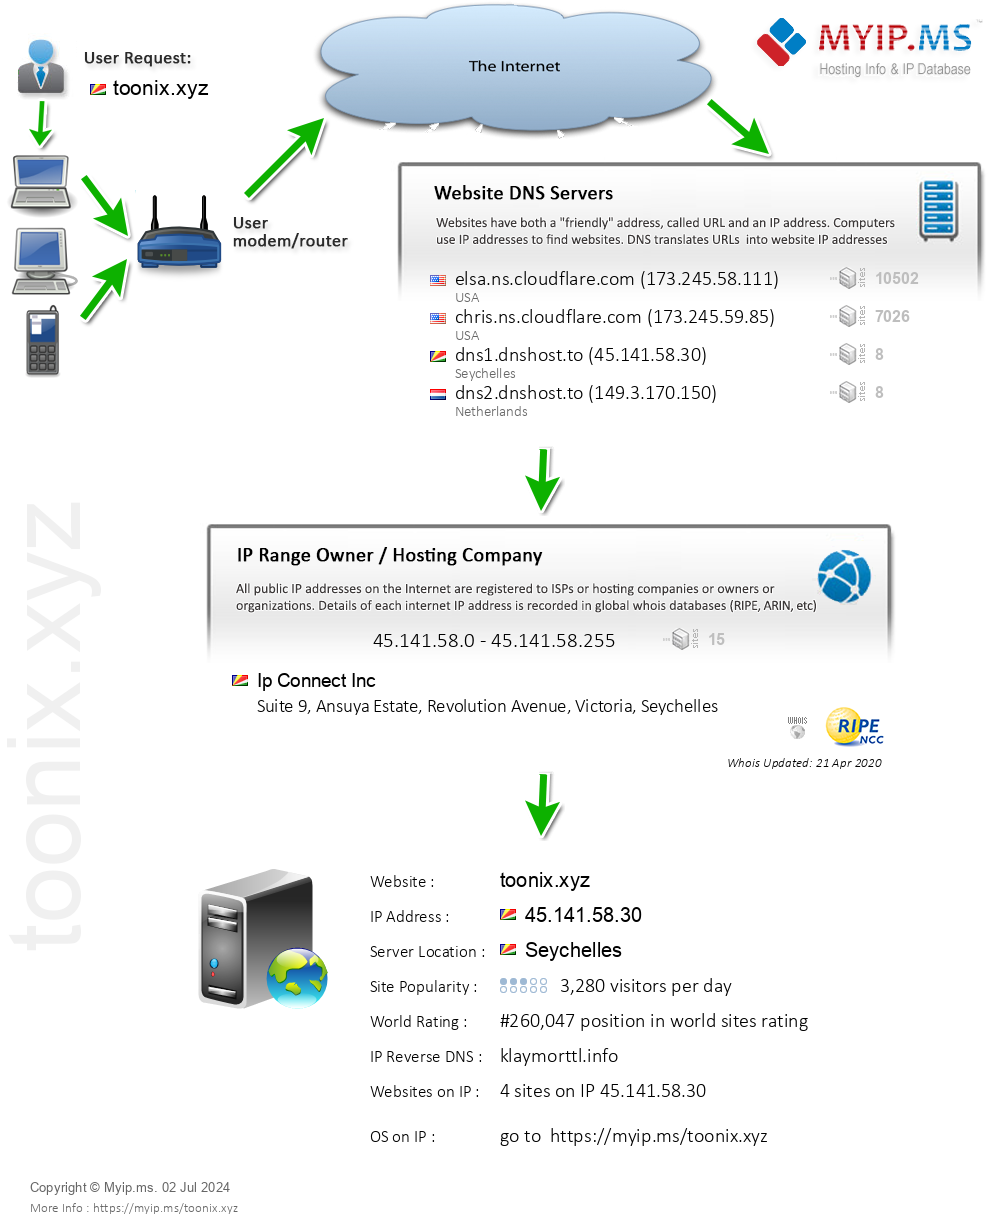 Toonix.xyz - Website Hosting Visual IP Diagram